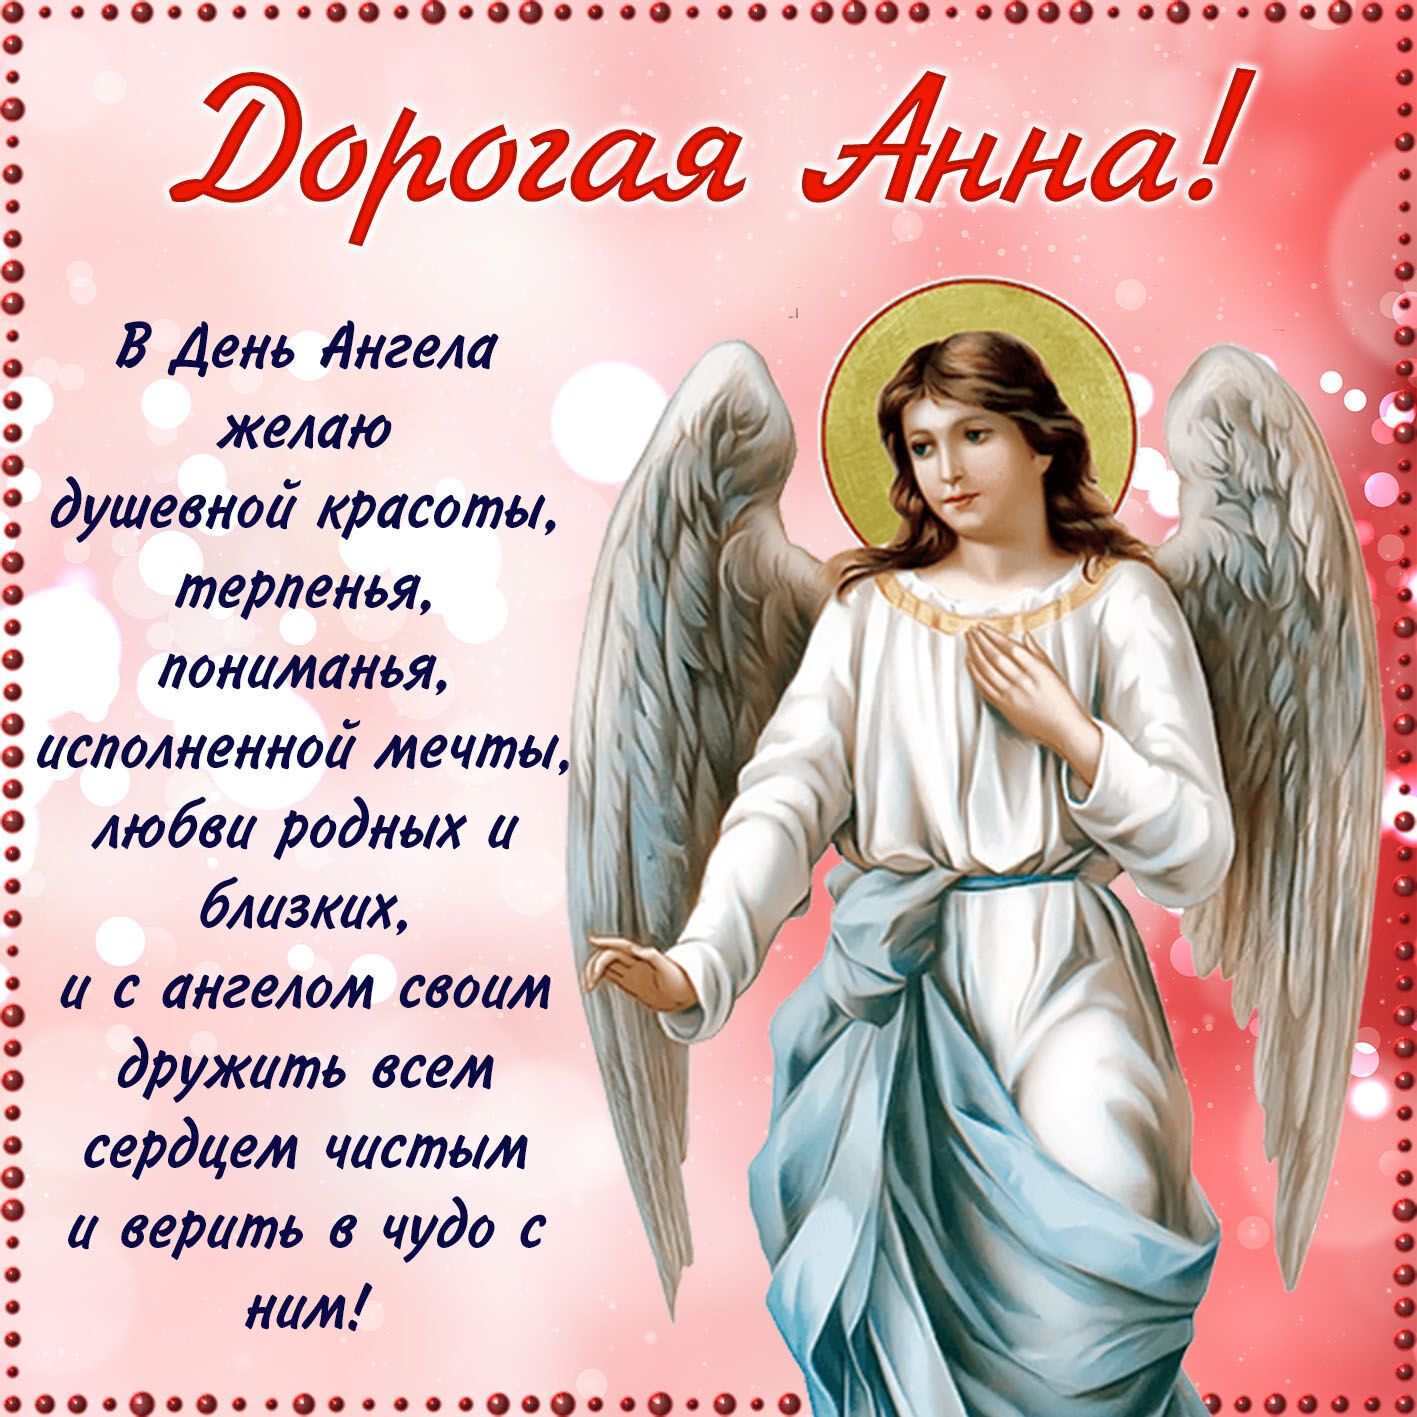 Пожелания в День ангела Анны